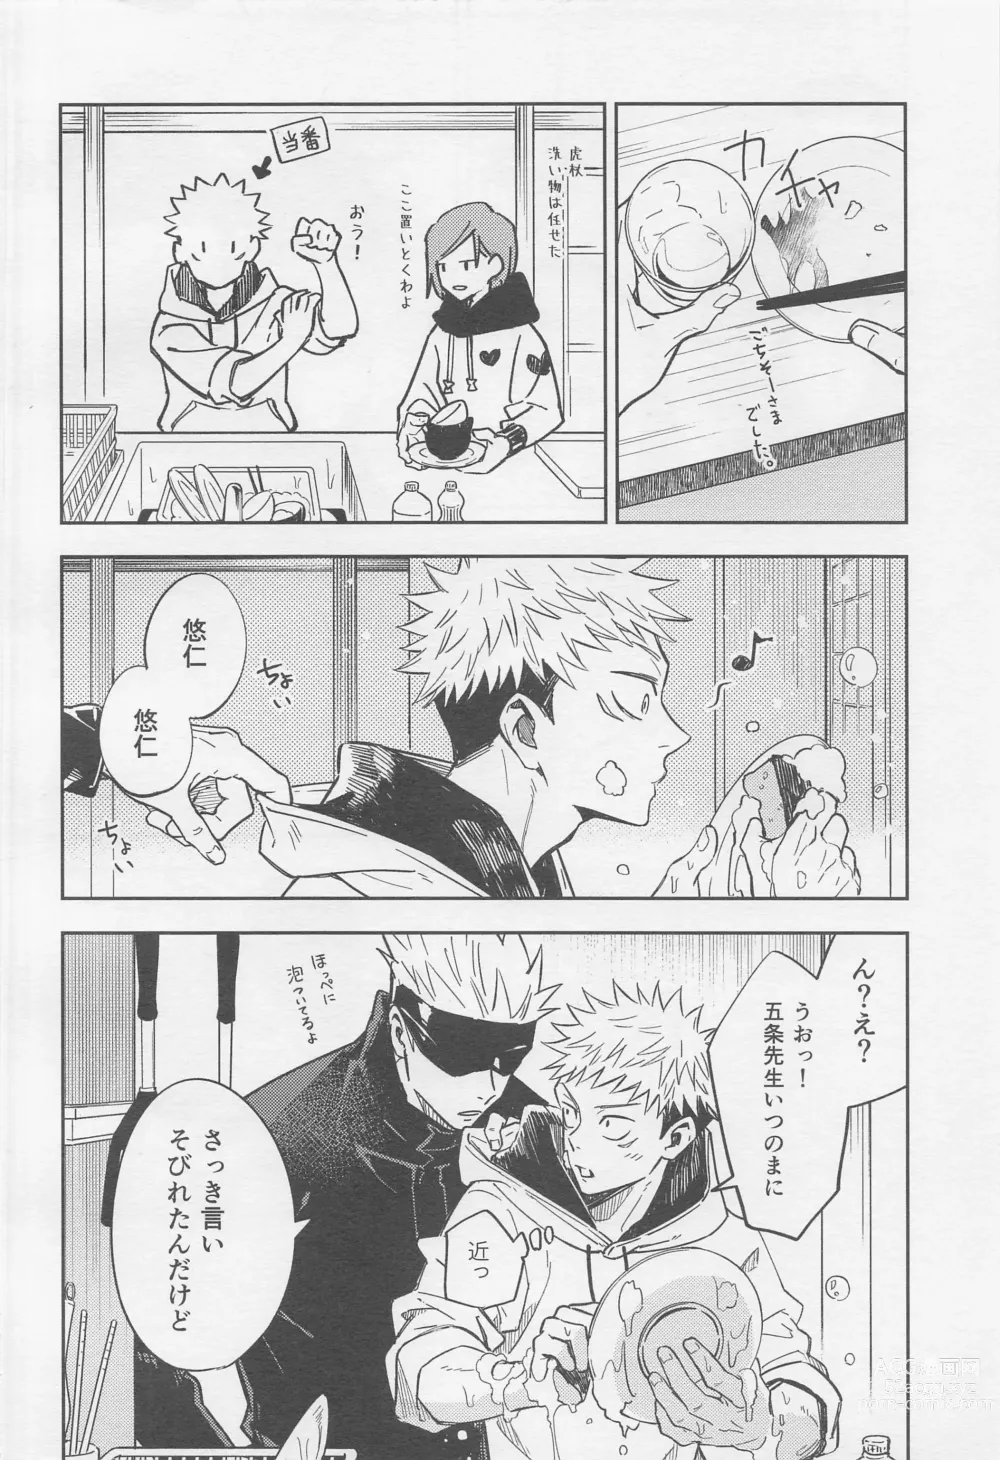 Page 7 of doujinshi Shutter Chance